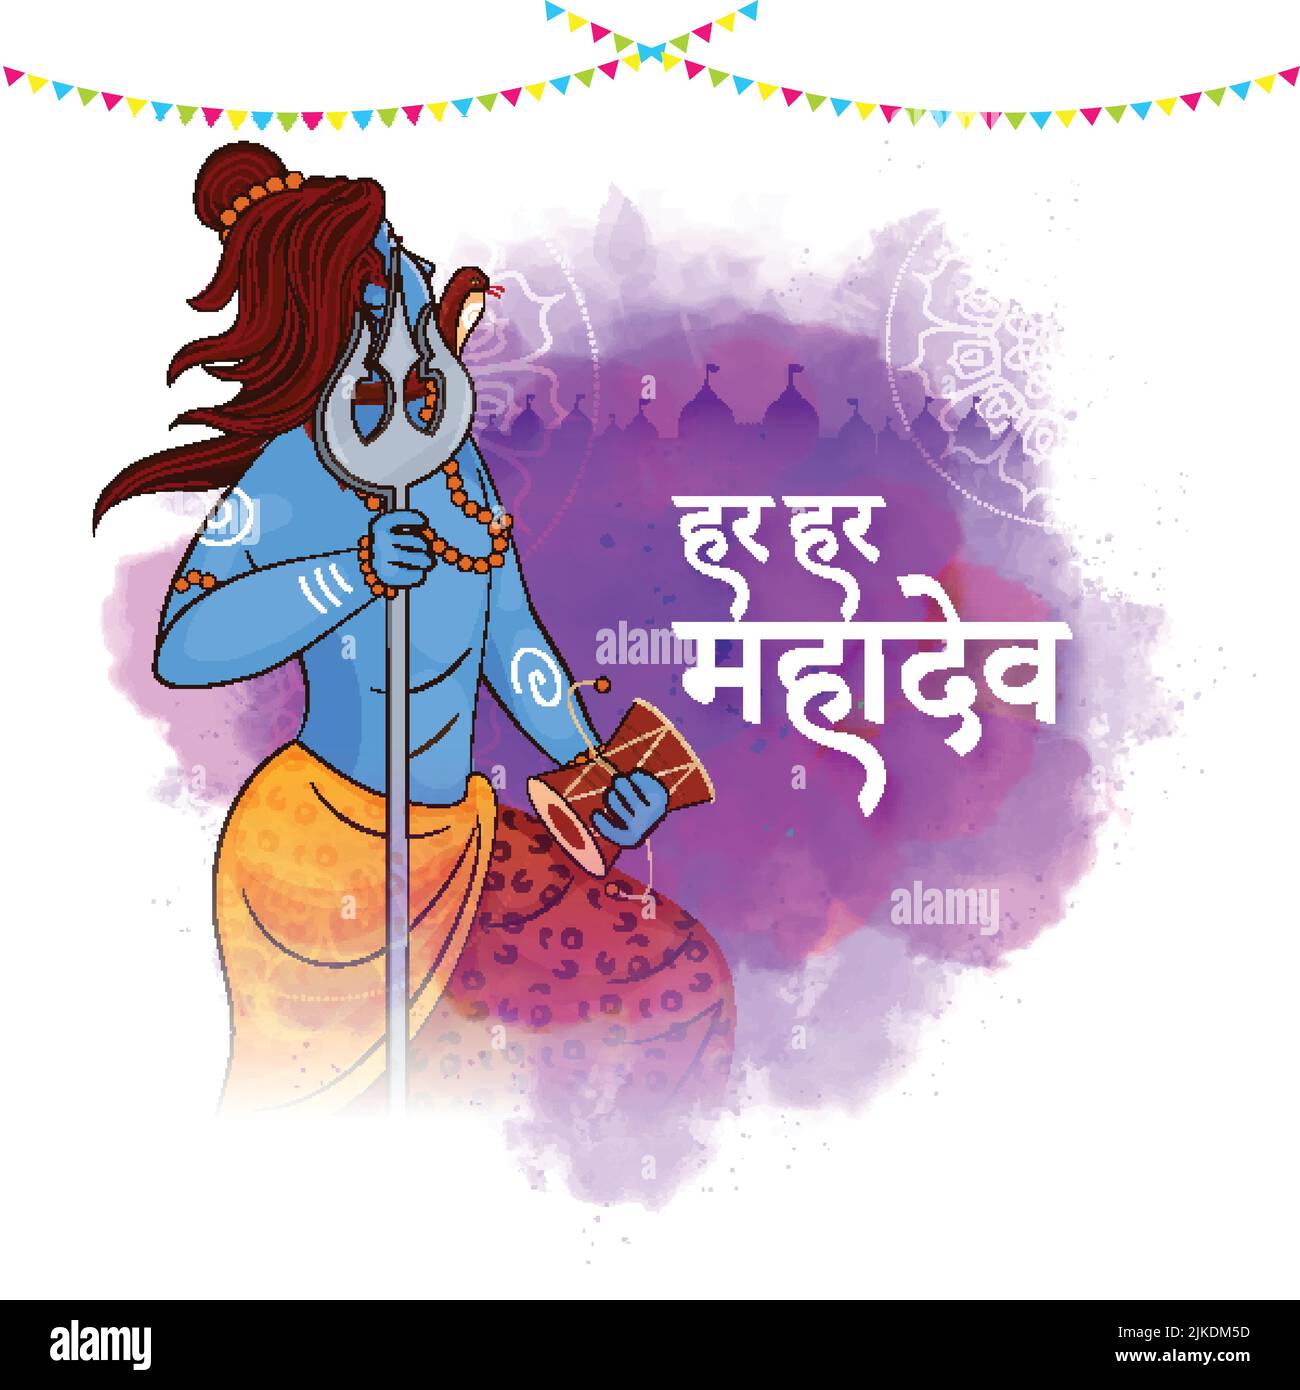 Everywhere Shiva (Har Har Mahadev) Text In Hindi-Sprache Mit Seitenansicht Des Herrn Shiva-Charakters Und Violettem Aquarell-Effekt Auf Weißem Hintergrund. Stock Vektor